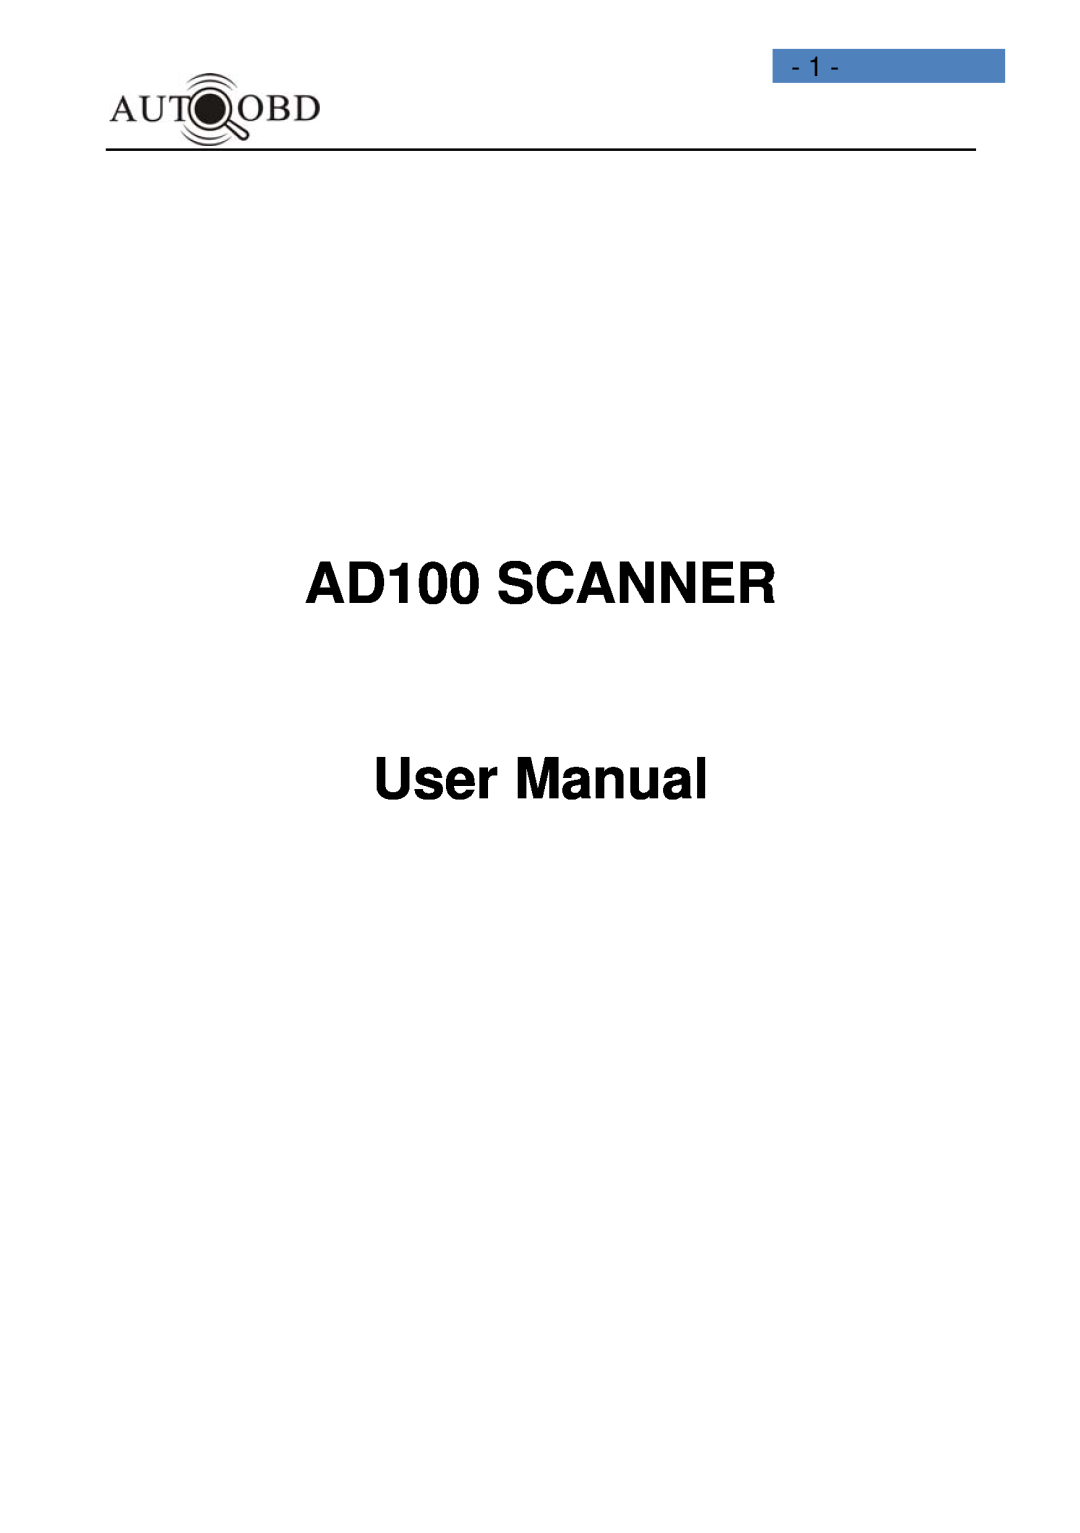 Daewoo user manual AD100 SCANNER User Manual 